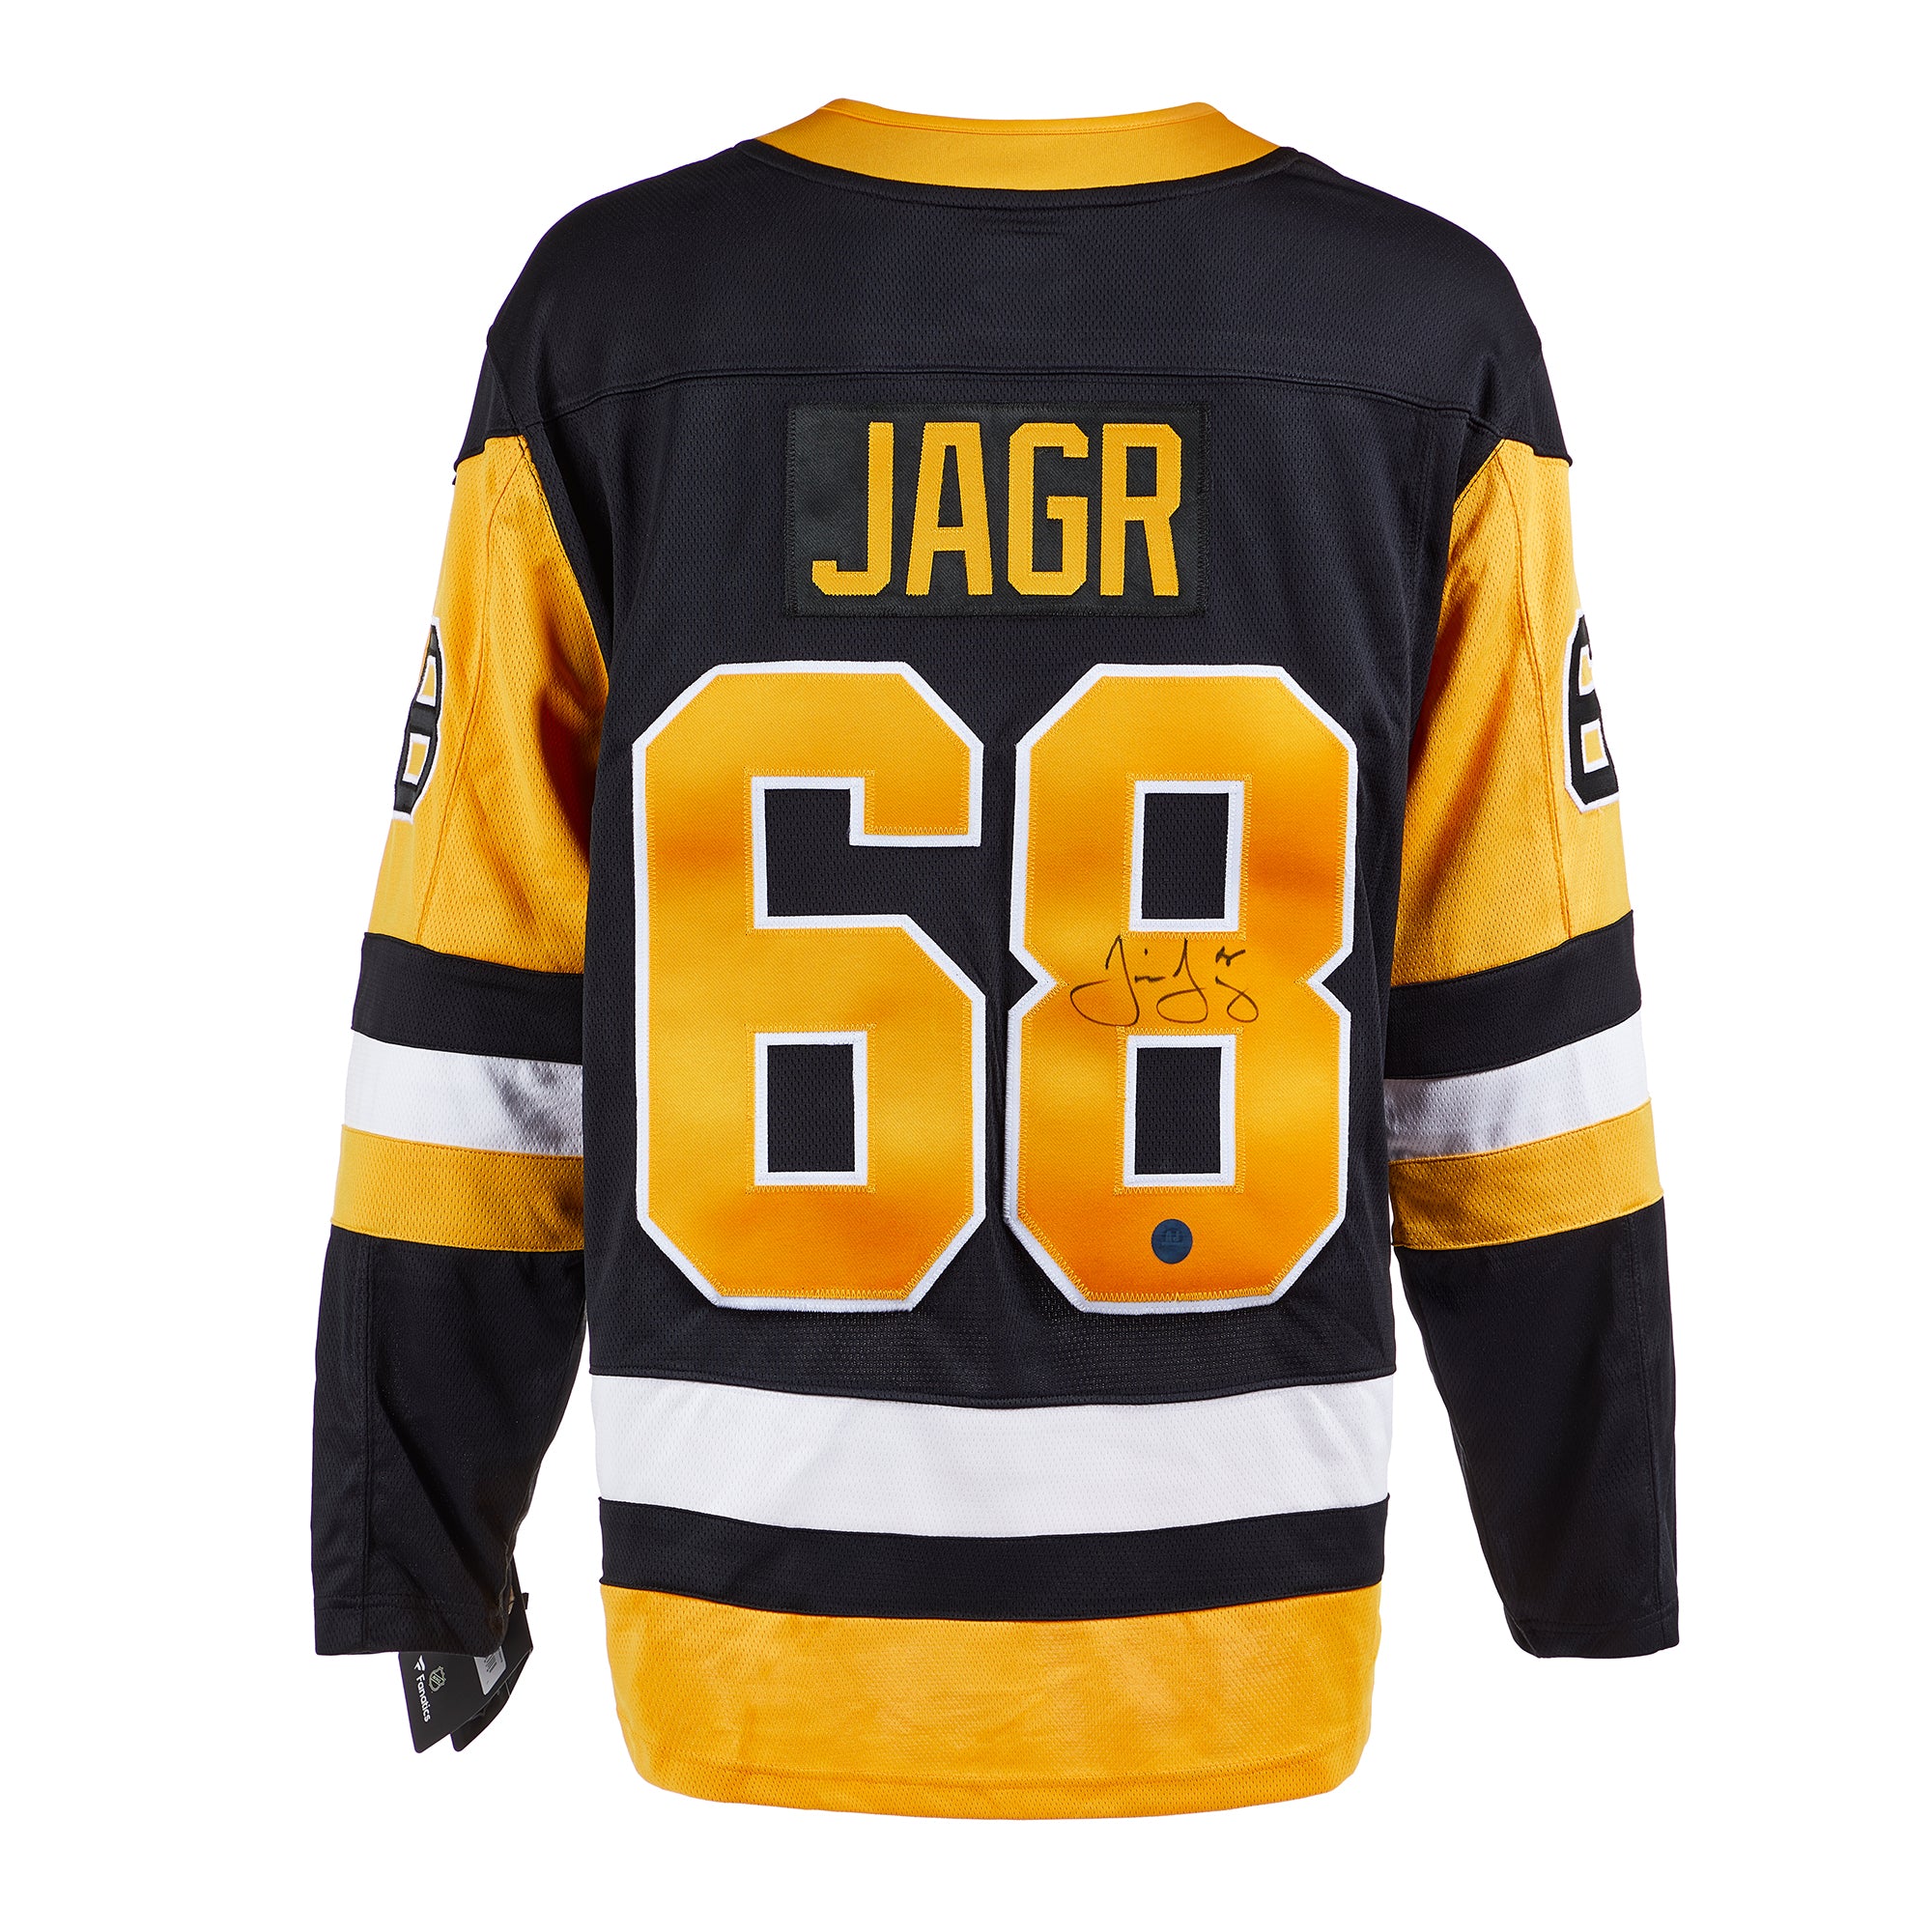 Jaromir Jagr Signed Game Used 1999 All Star Game Jersey NHL COA & JSA COA